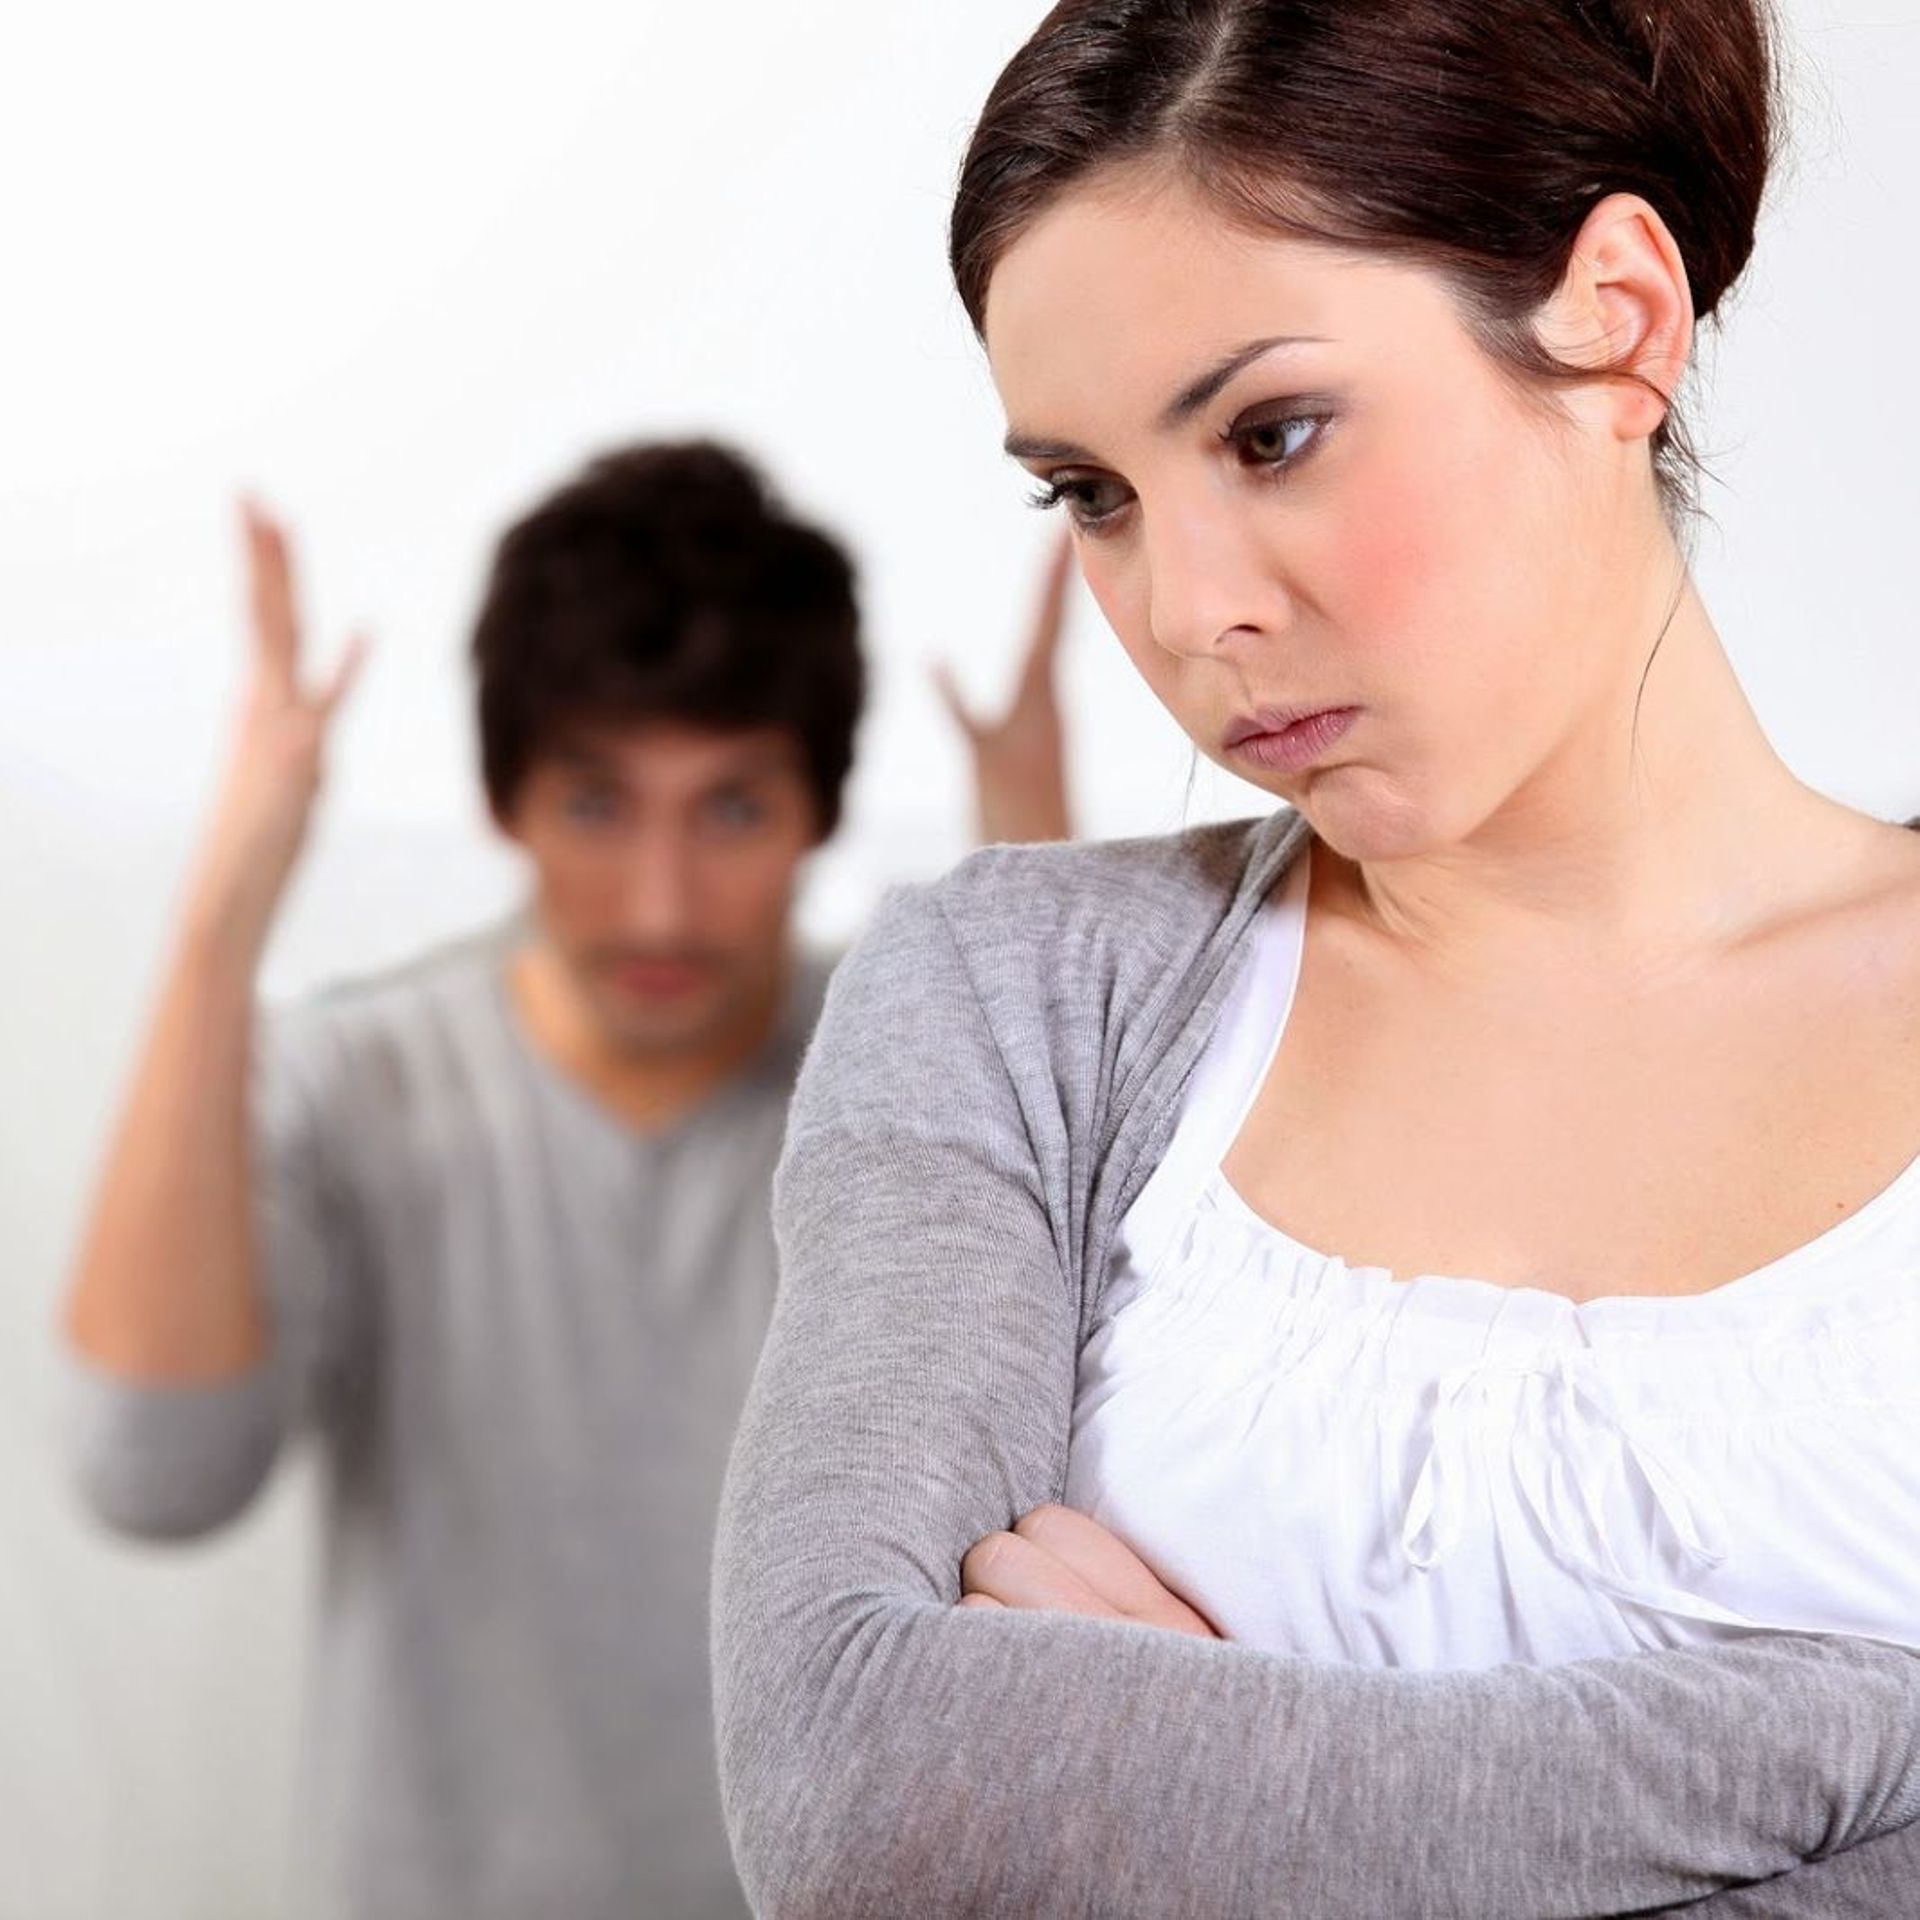 Conflits et disputes dans le couple, comment les gérer? : le